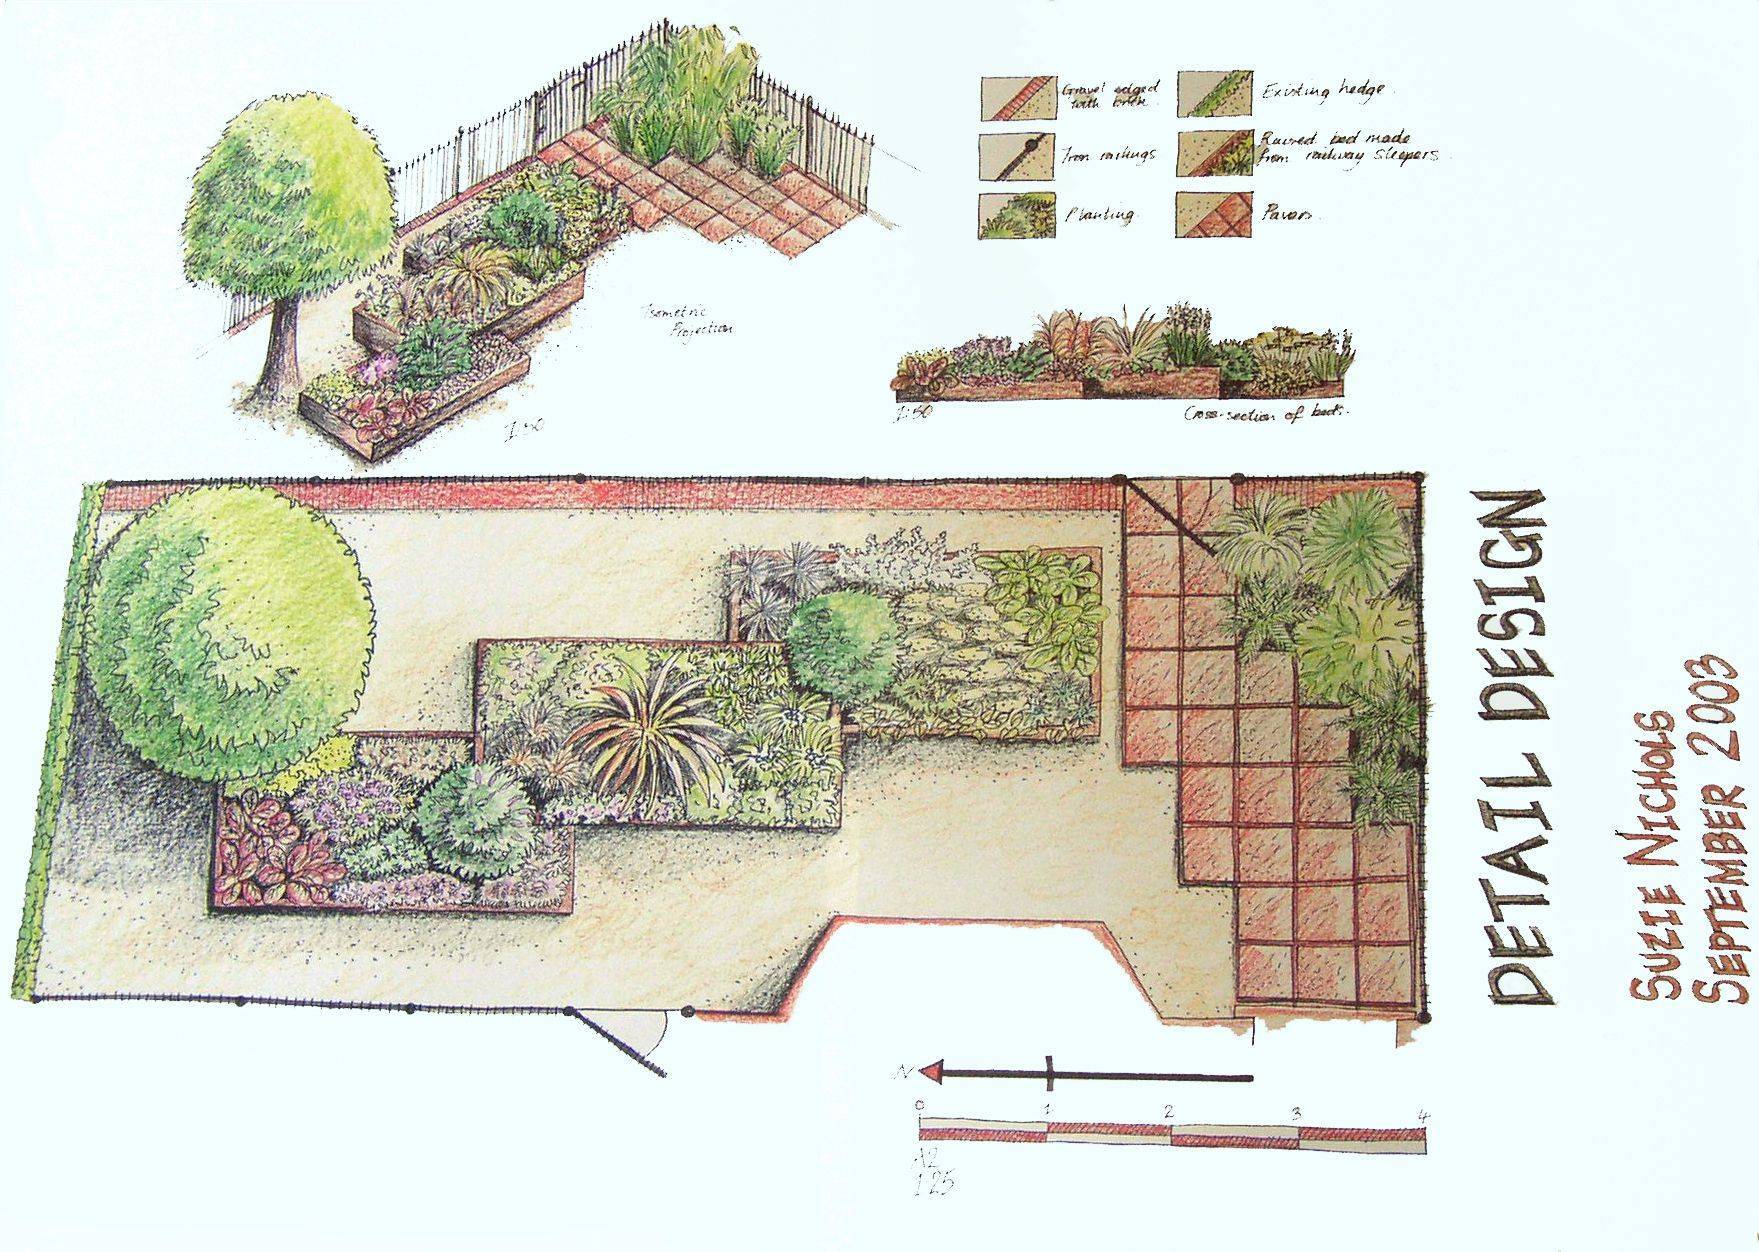 Палисадник: как правильно обустроить садовый участок, стили оформления, растения для выращивания в саду